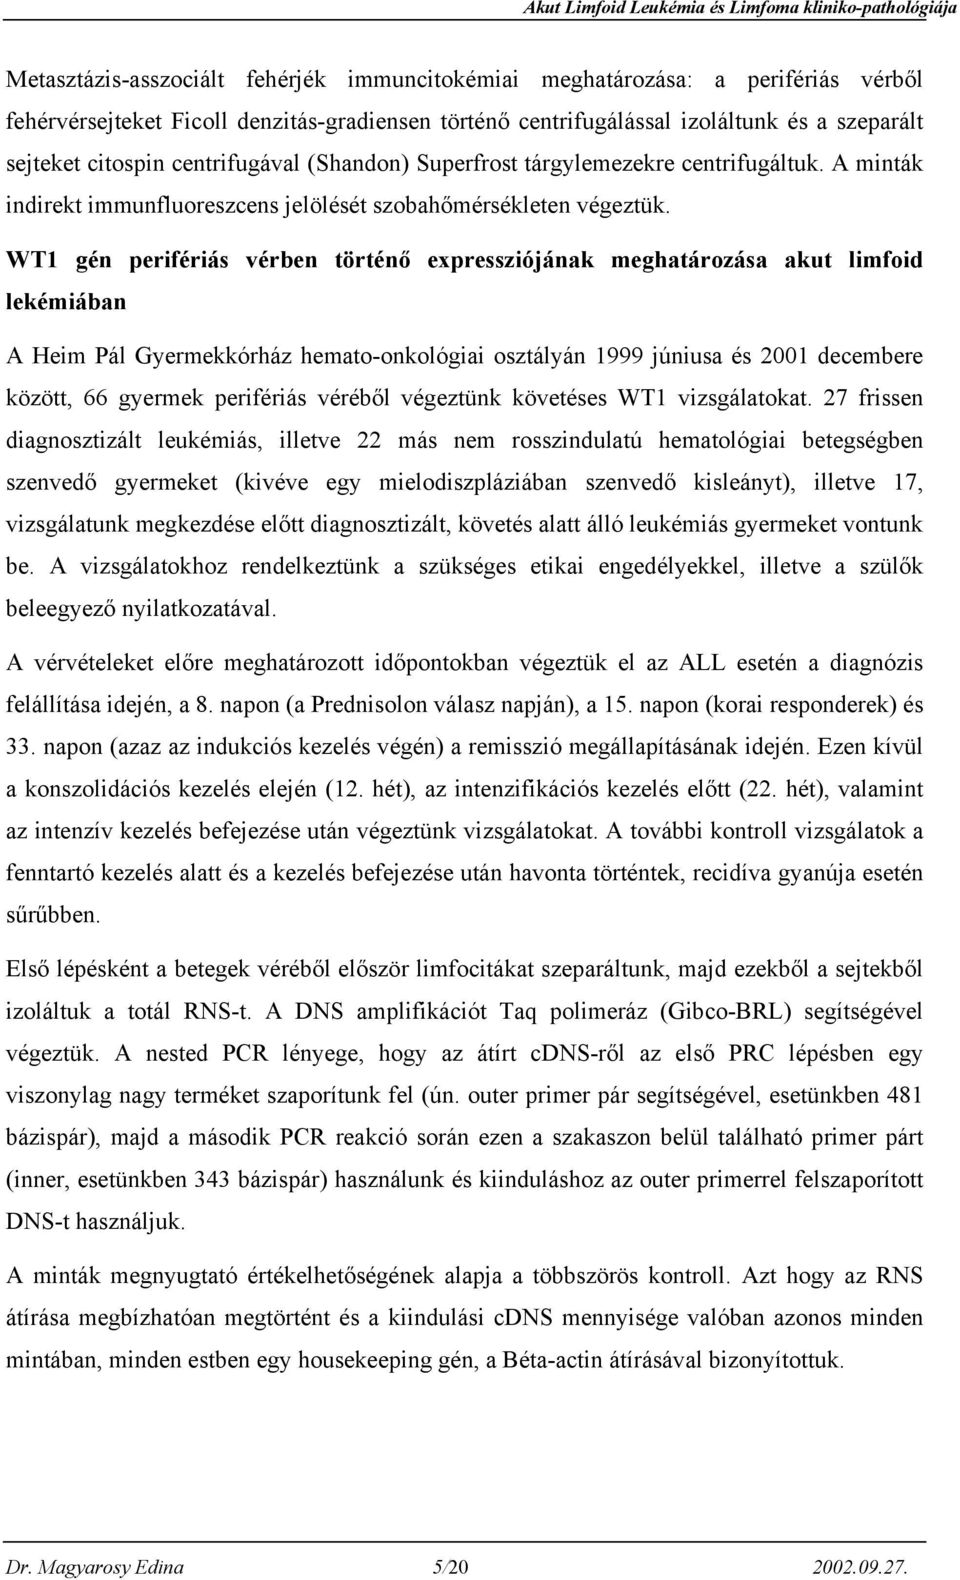 WT1 gén perifériás vérben történő expressziójának meghatározása akut limfoid lekémiában A Heim Pál Gyermekkórház hemato-onkológiai osztályán 1999 júniusa és 2001 decembere között, 66 gyermek